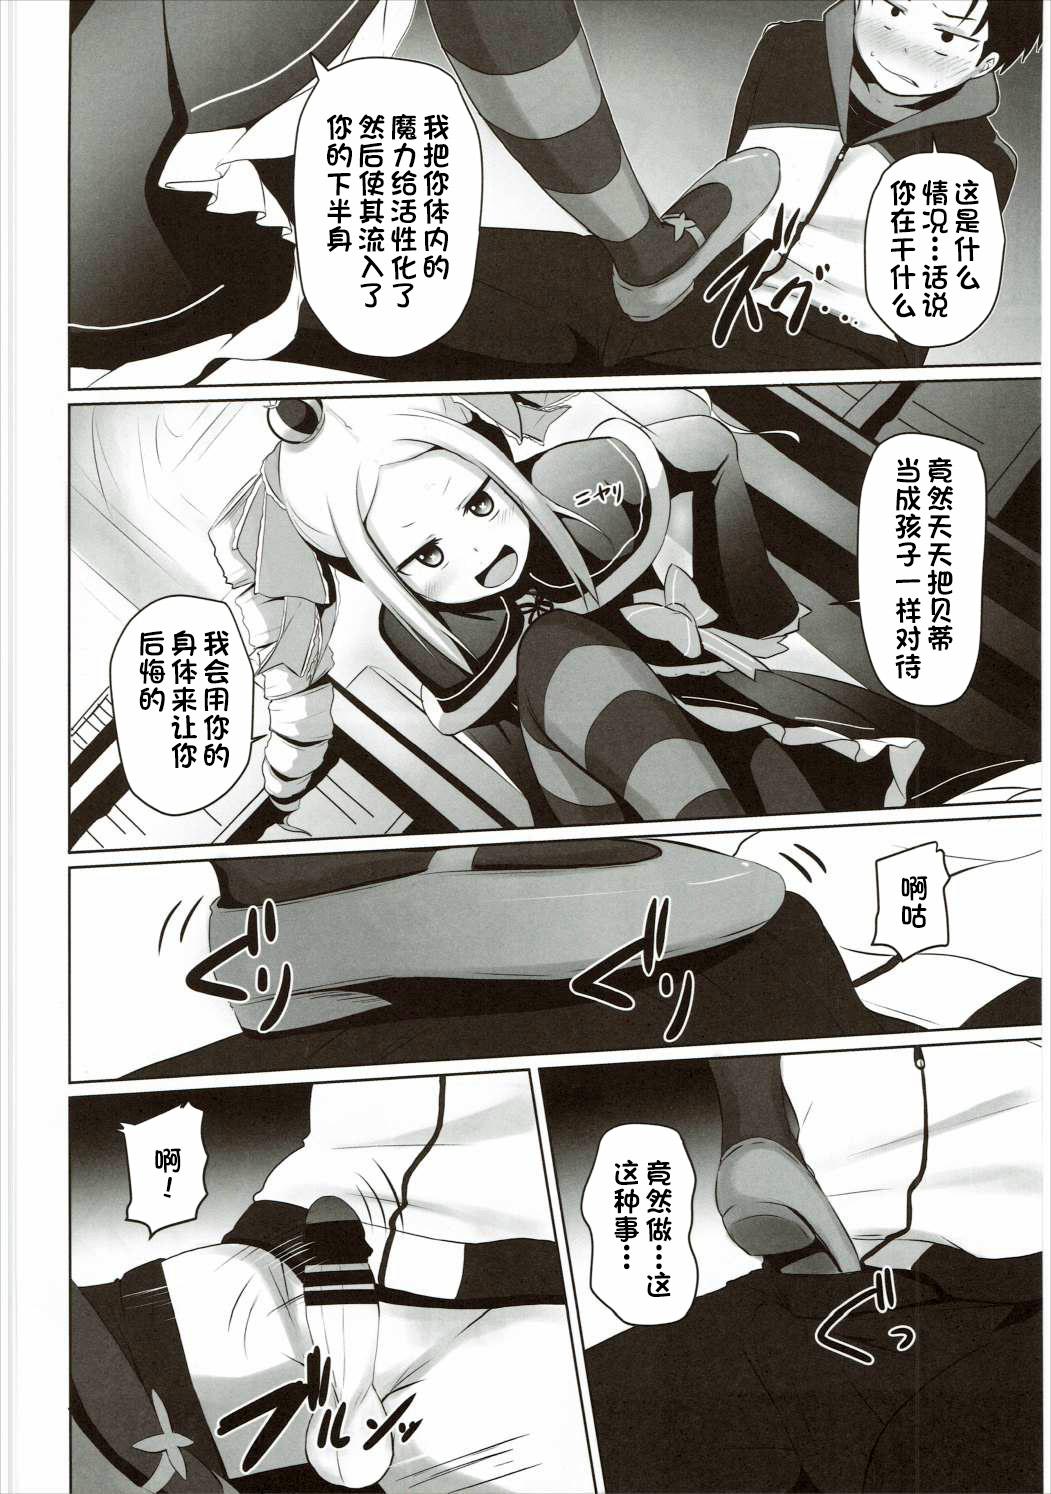 Little Omae Namaiki kashira!! - Re zero kara hajimeru isekai seikatsu Students - Page 5